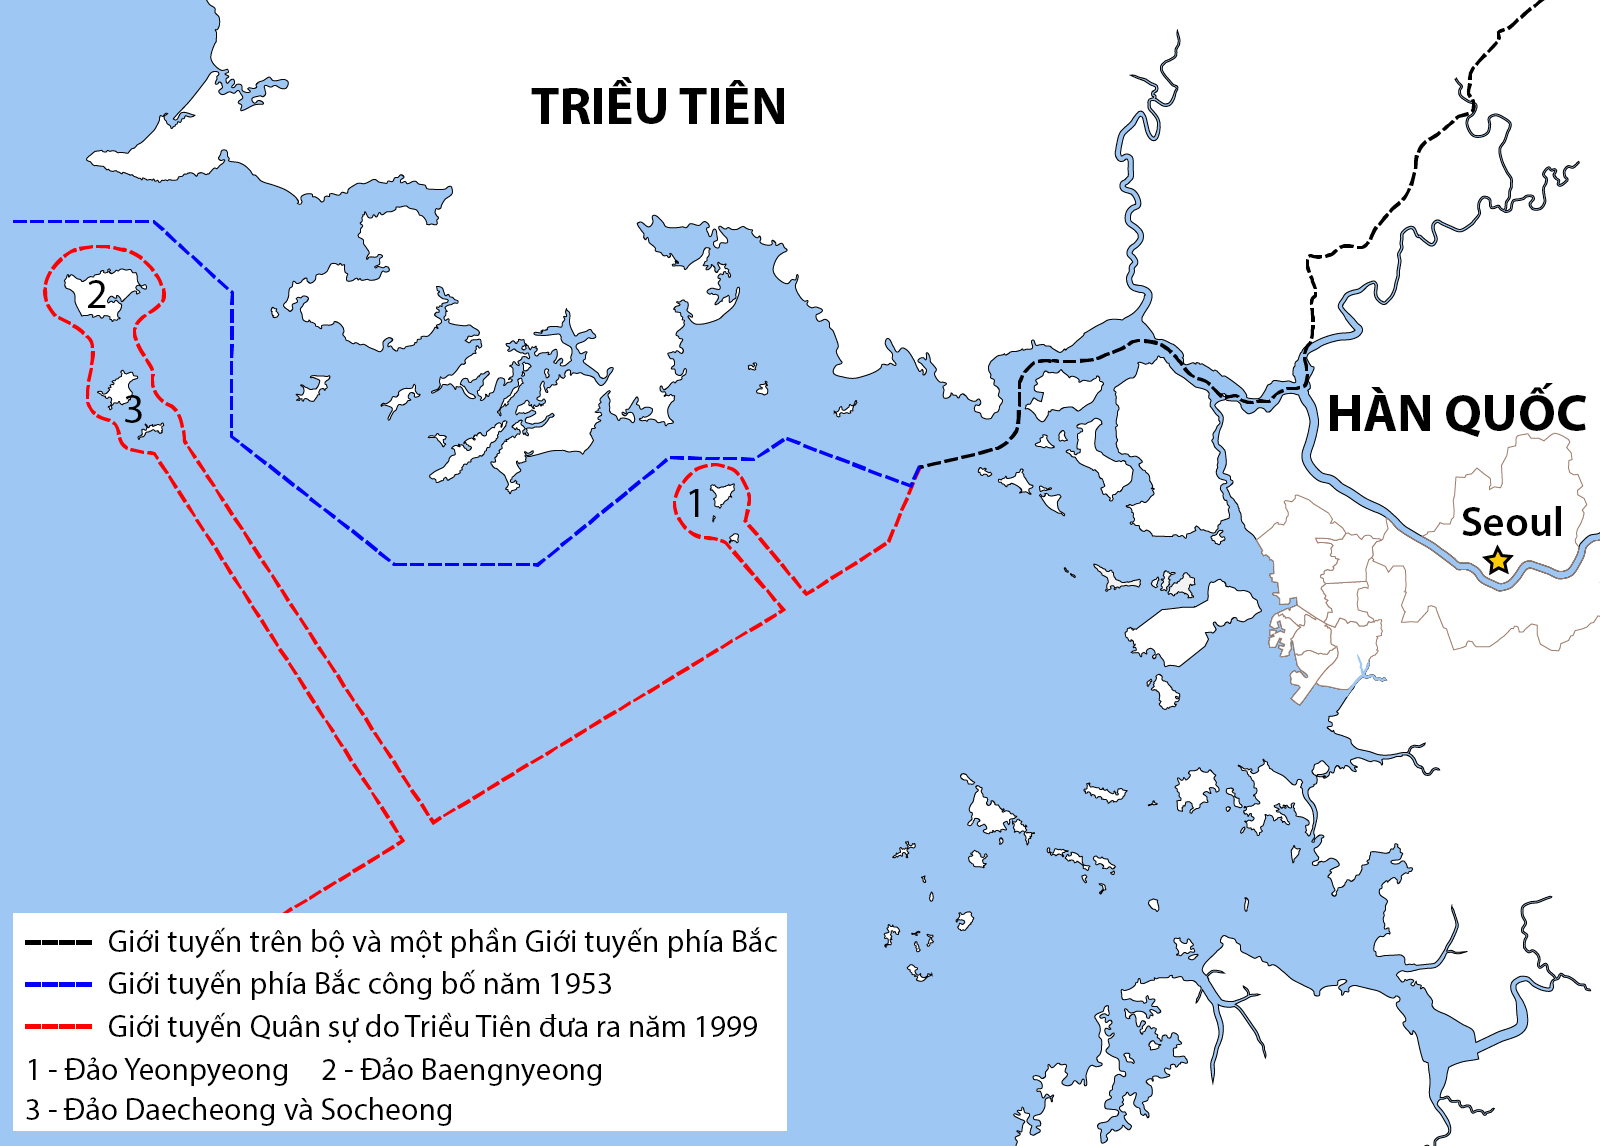 Giới tuyến phía Bắc và Giới tuyến Quân sự trên Hoàng Hải. Đồ họa: Wikimedia.